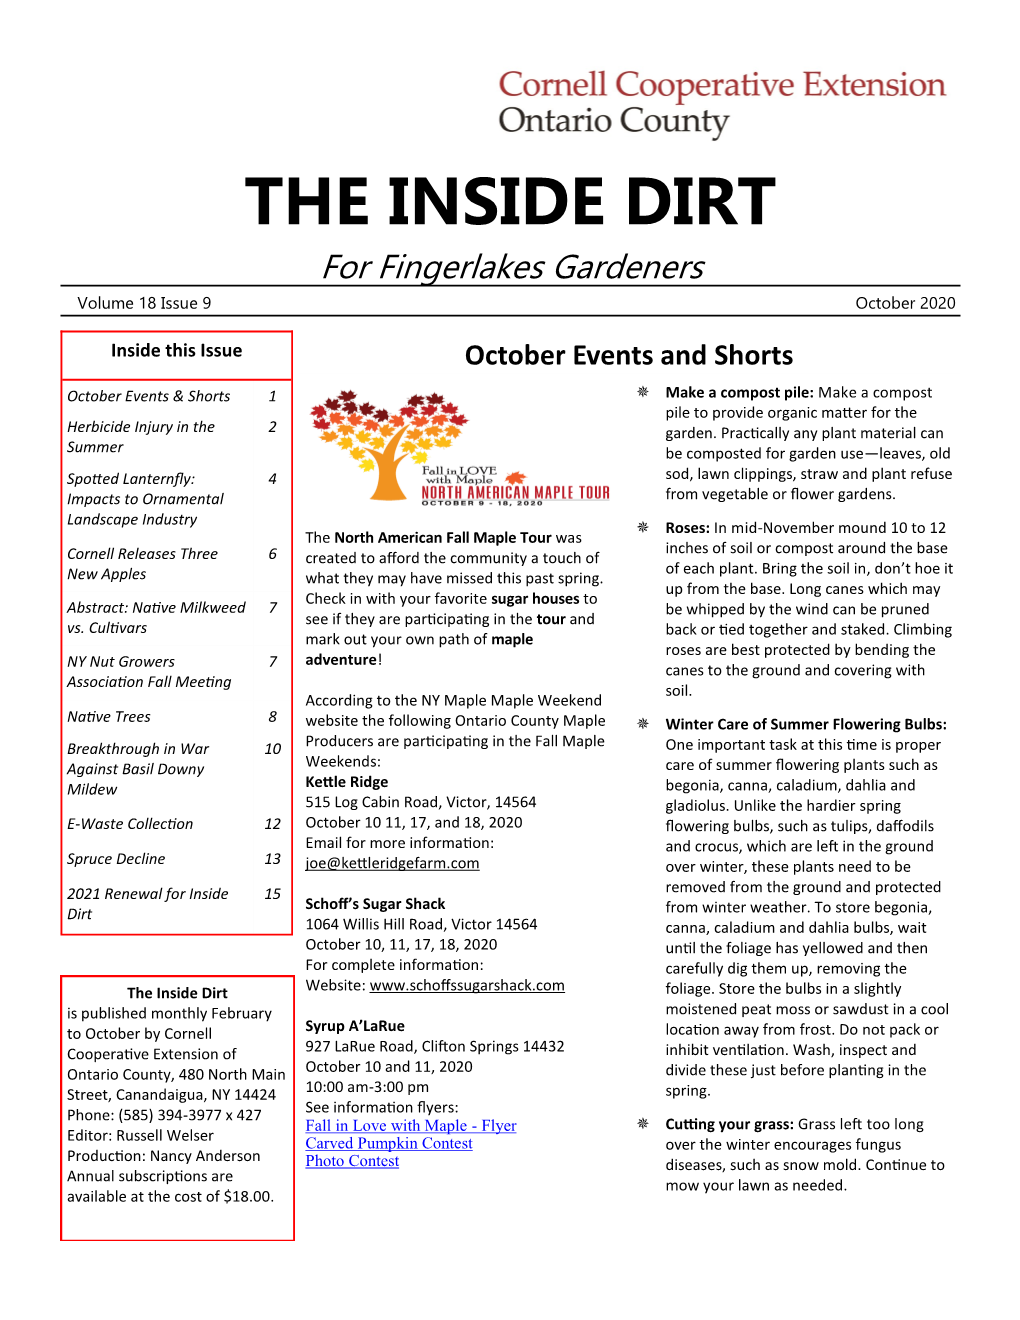 THE INSIDE DIRT for Fingerlakes Gardeners Volume Issue October 2020